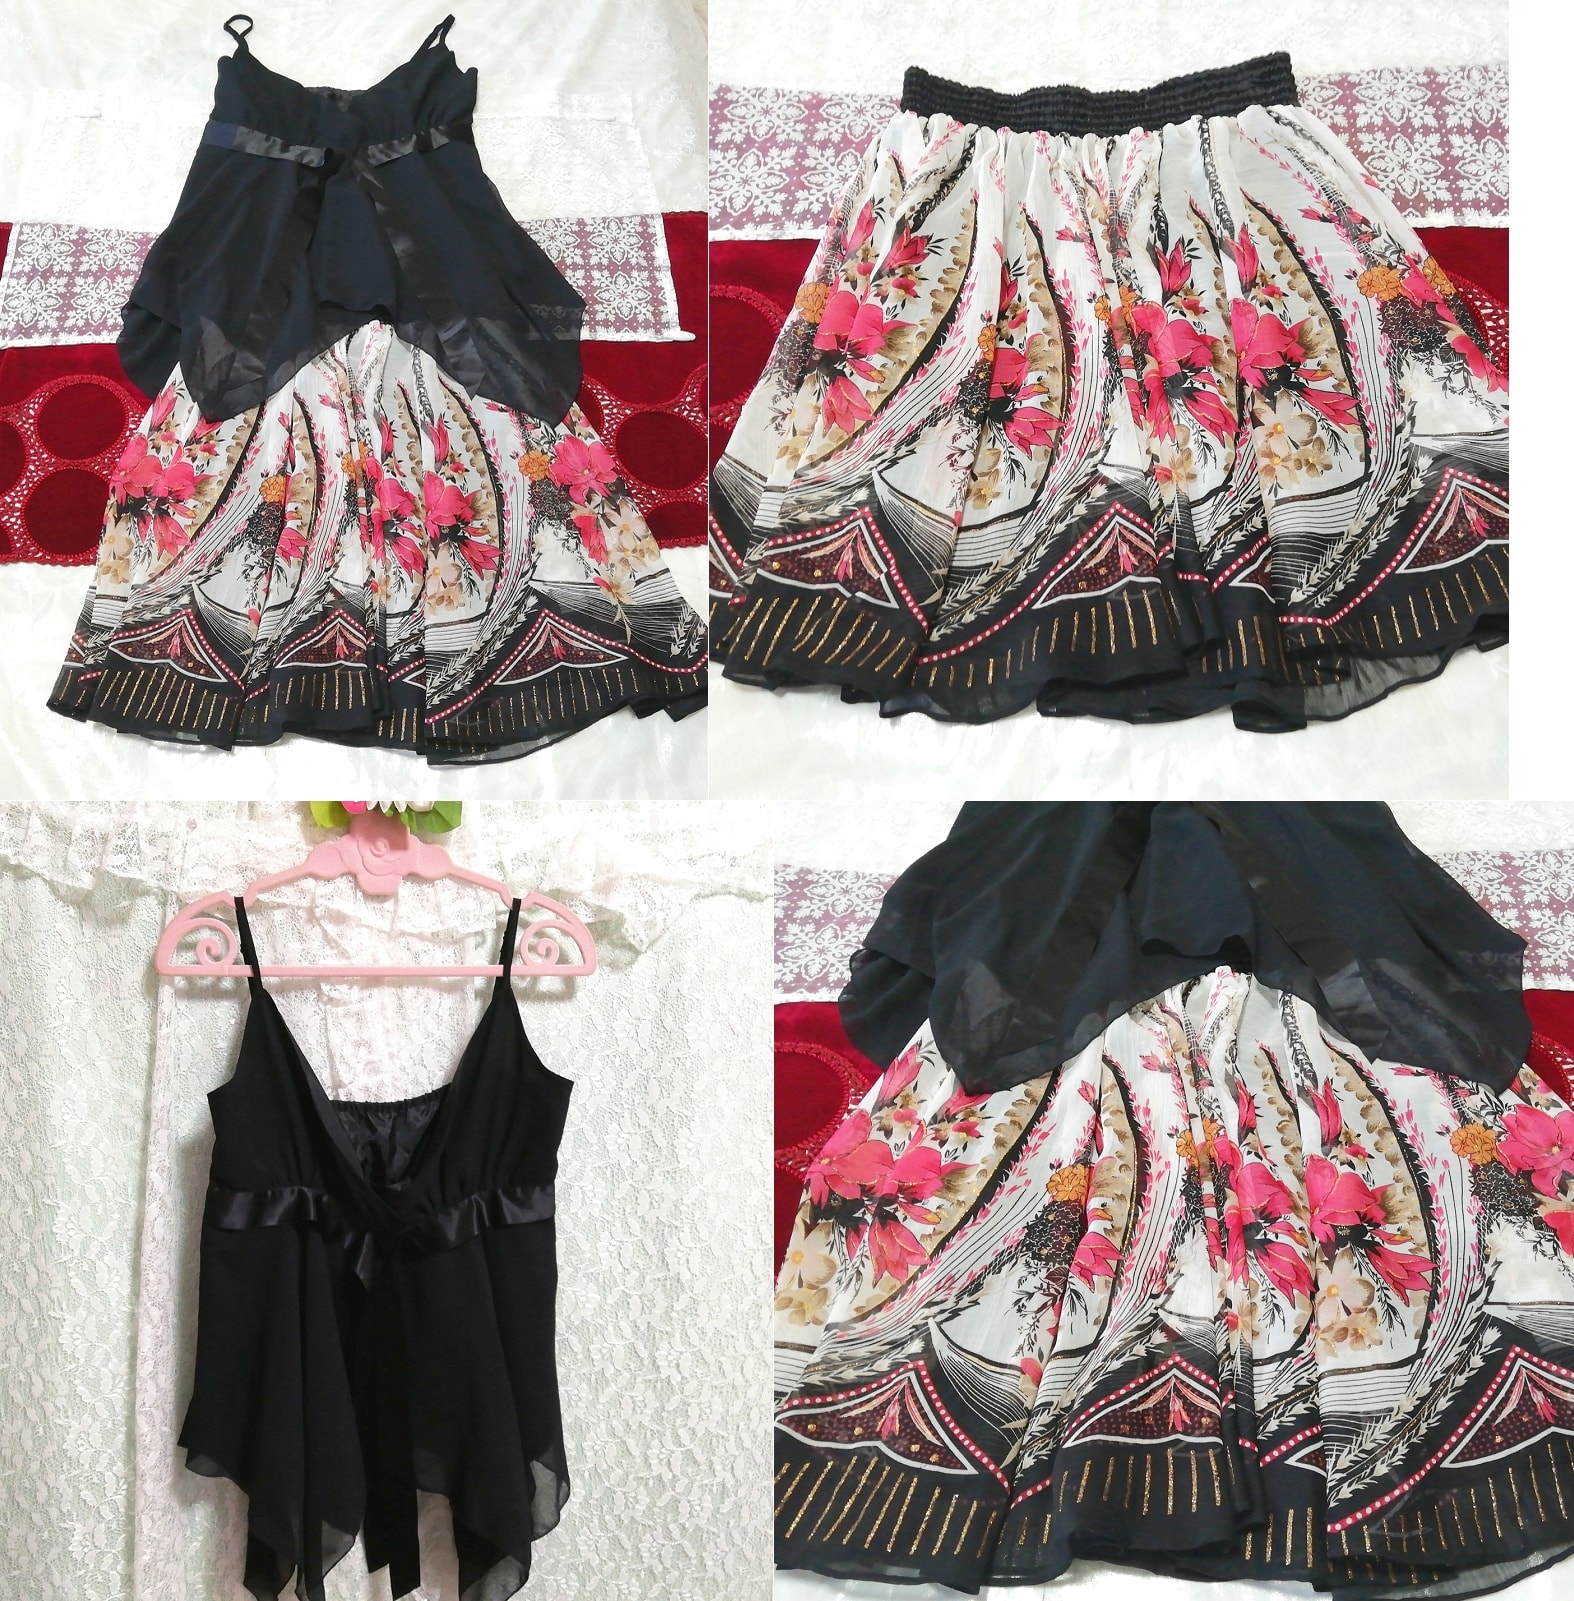 블랙 쉬폰 캐미솔 네글리제 나이트가운 나이트웨어 꽃무늬 스커트 드레스 2P, 패션, 숙녀 패션, 잠옷, 잠옷